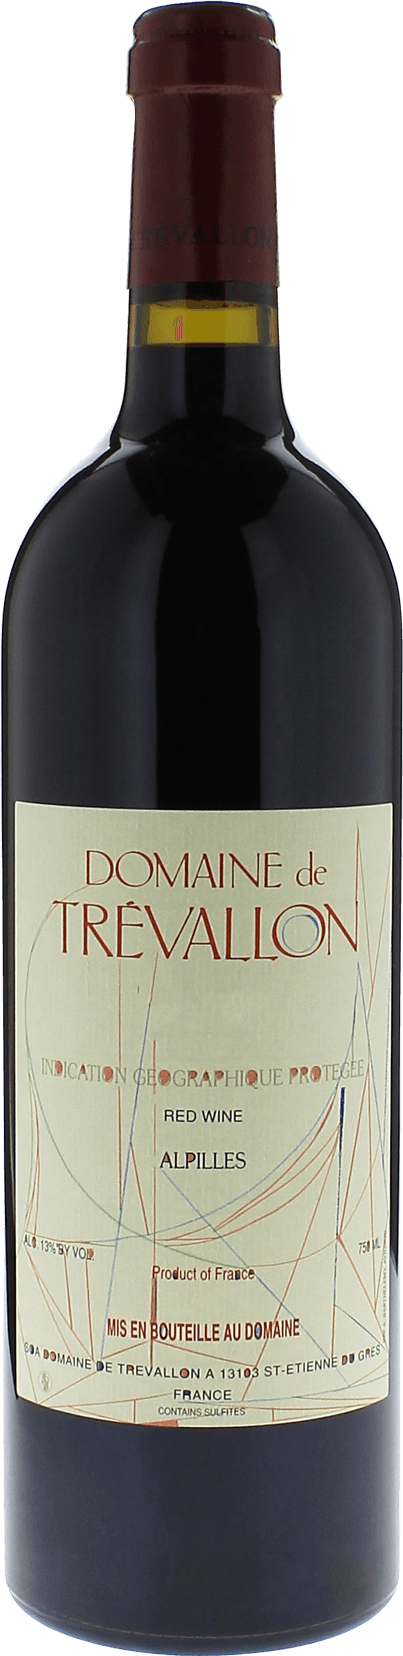 Domaine de trevallon rouge 2013  Vin de Pays, Provence